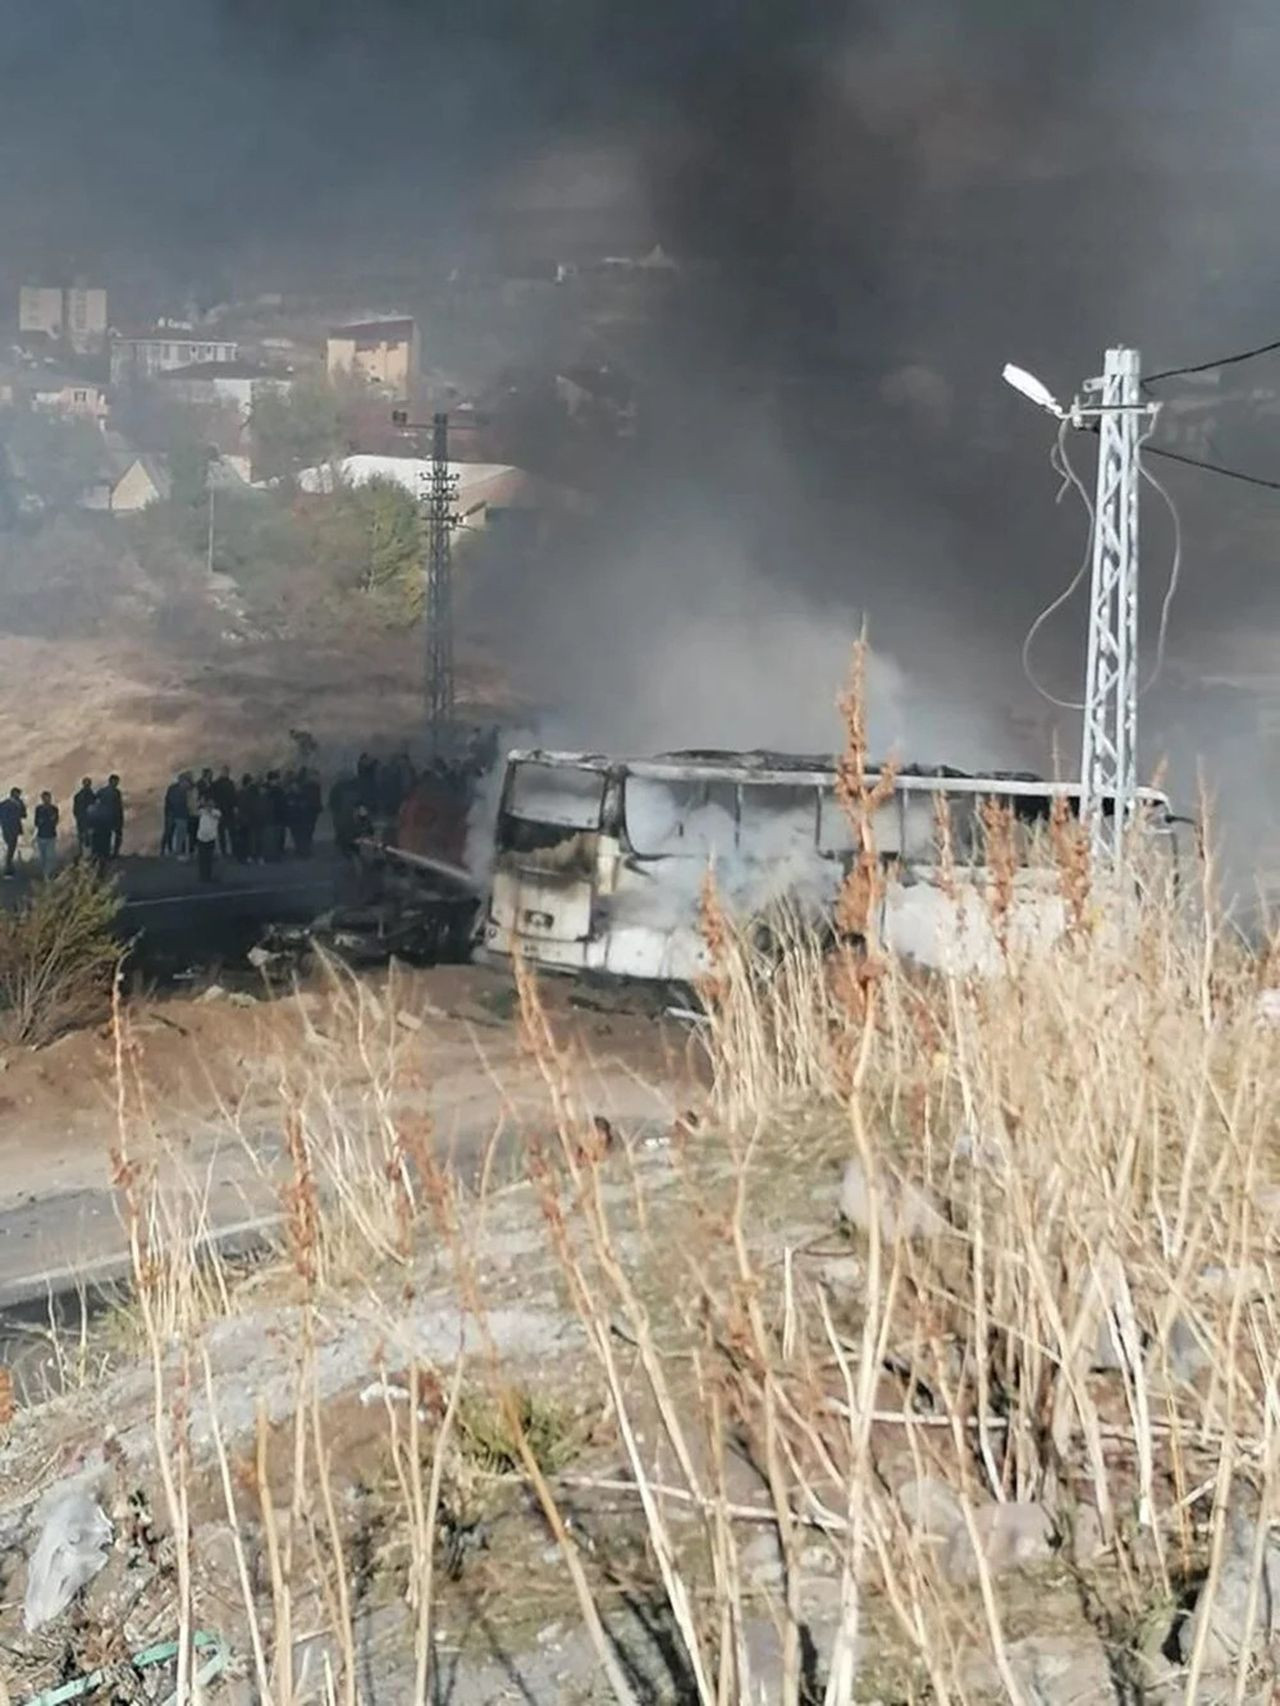 Tanker yolcu otobüsüyle çarpıştı! Ortalık savaş alanına döndü - Resim: 5